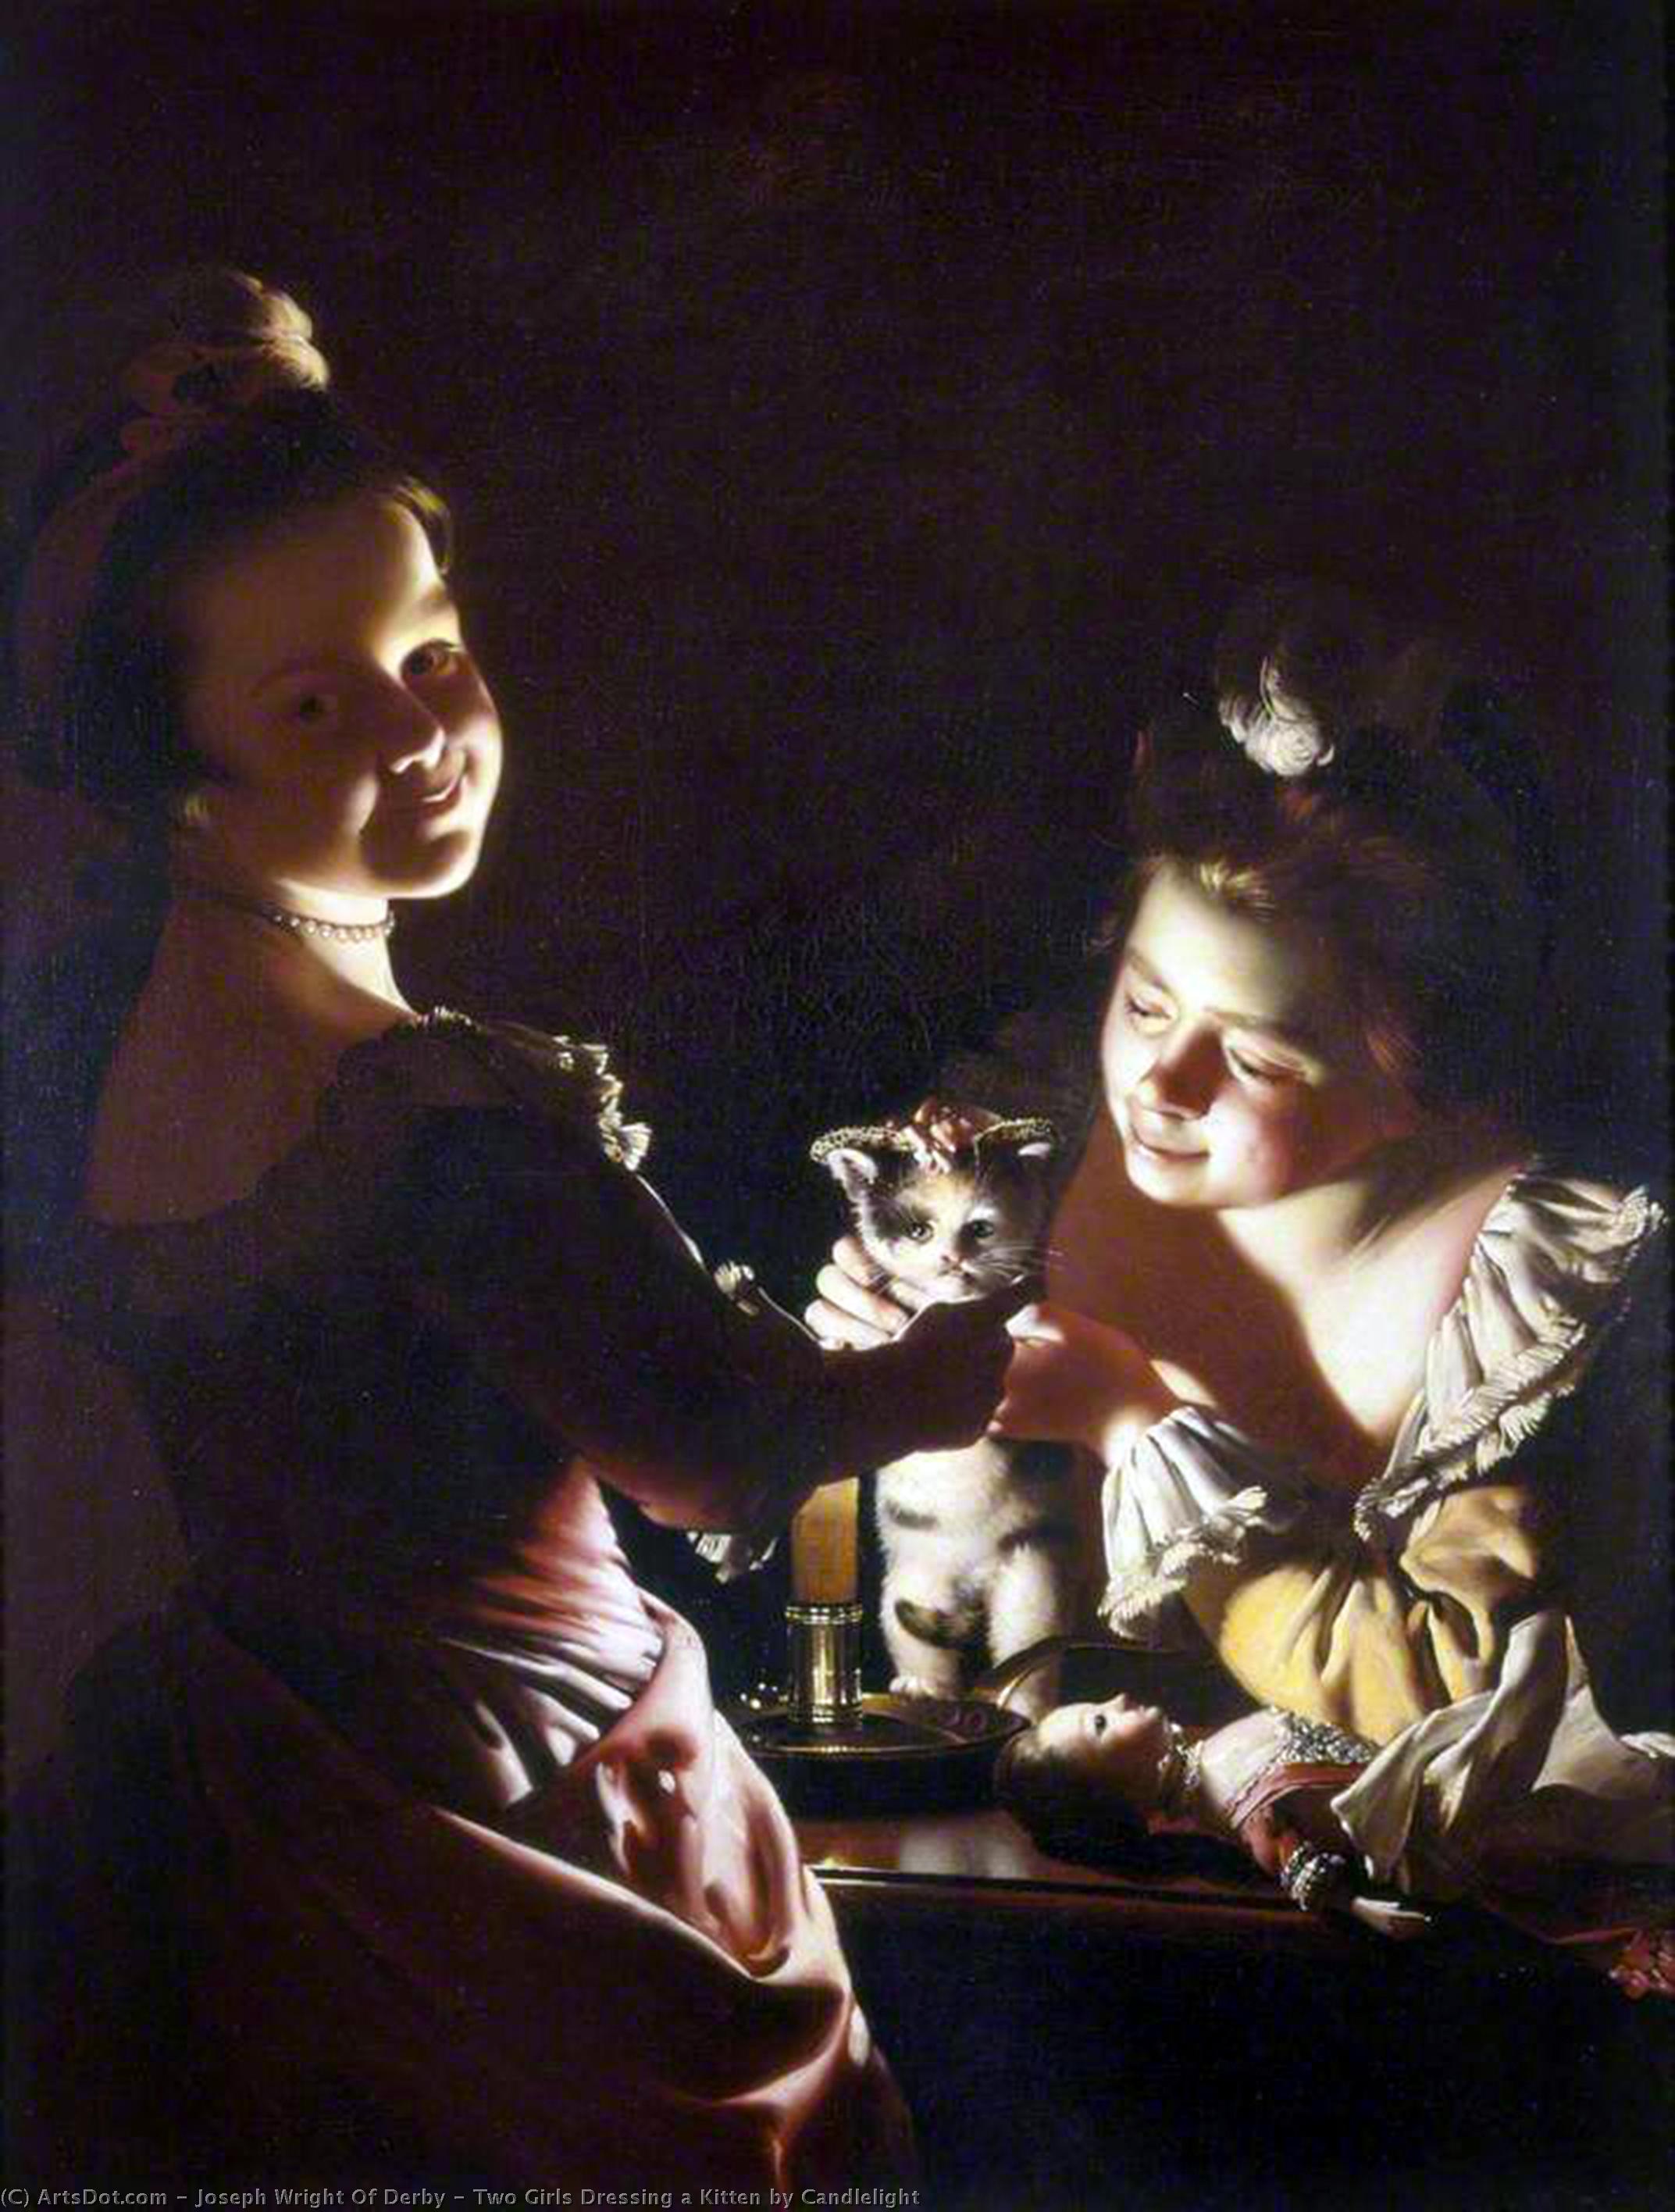 WikiOO.org - Енциклопедия за изящни изкуства - Живопис, Произведения на изкуството Joseph Wright Of Derby - Two Girls Dressing a Kitten by Candlelight